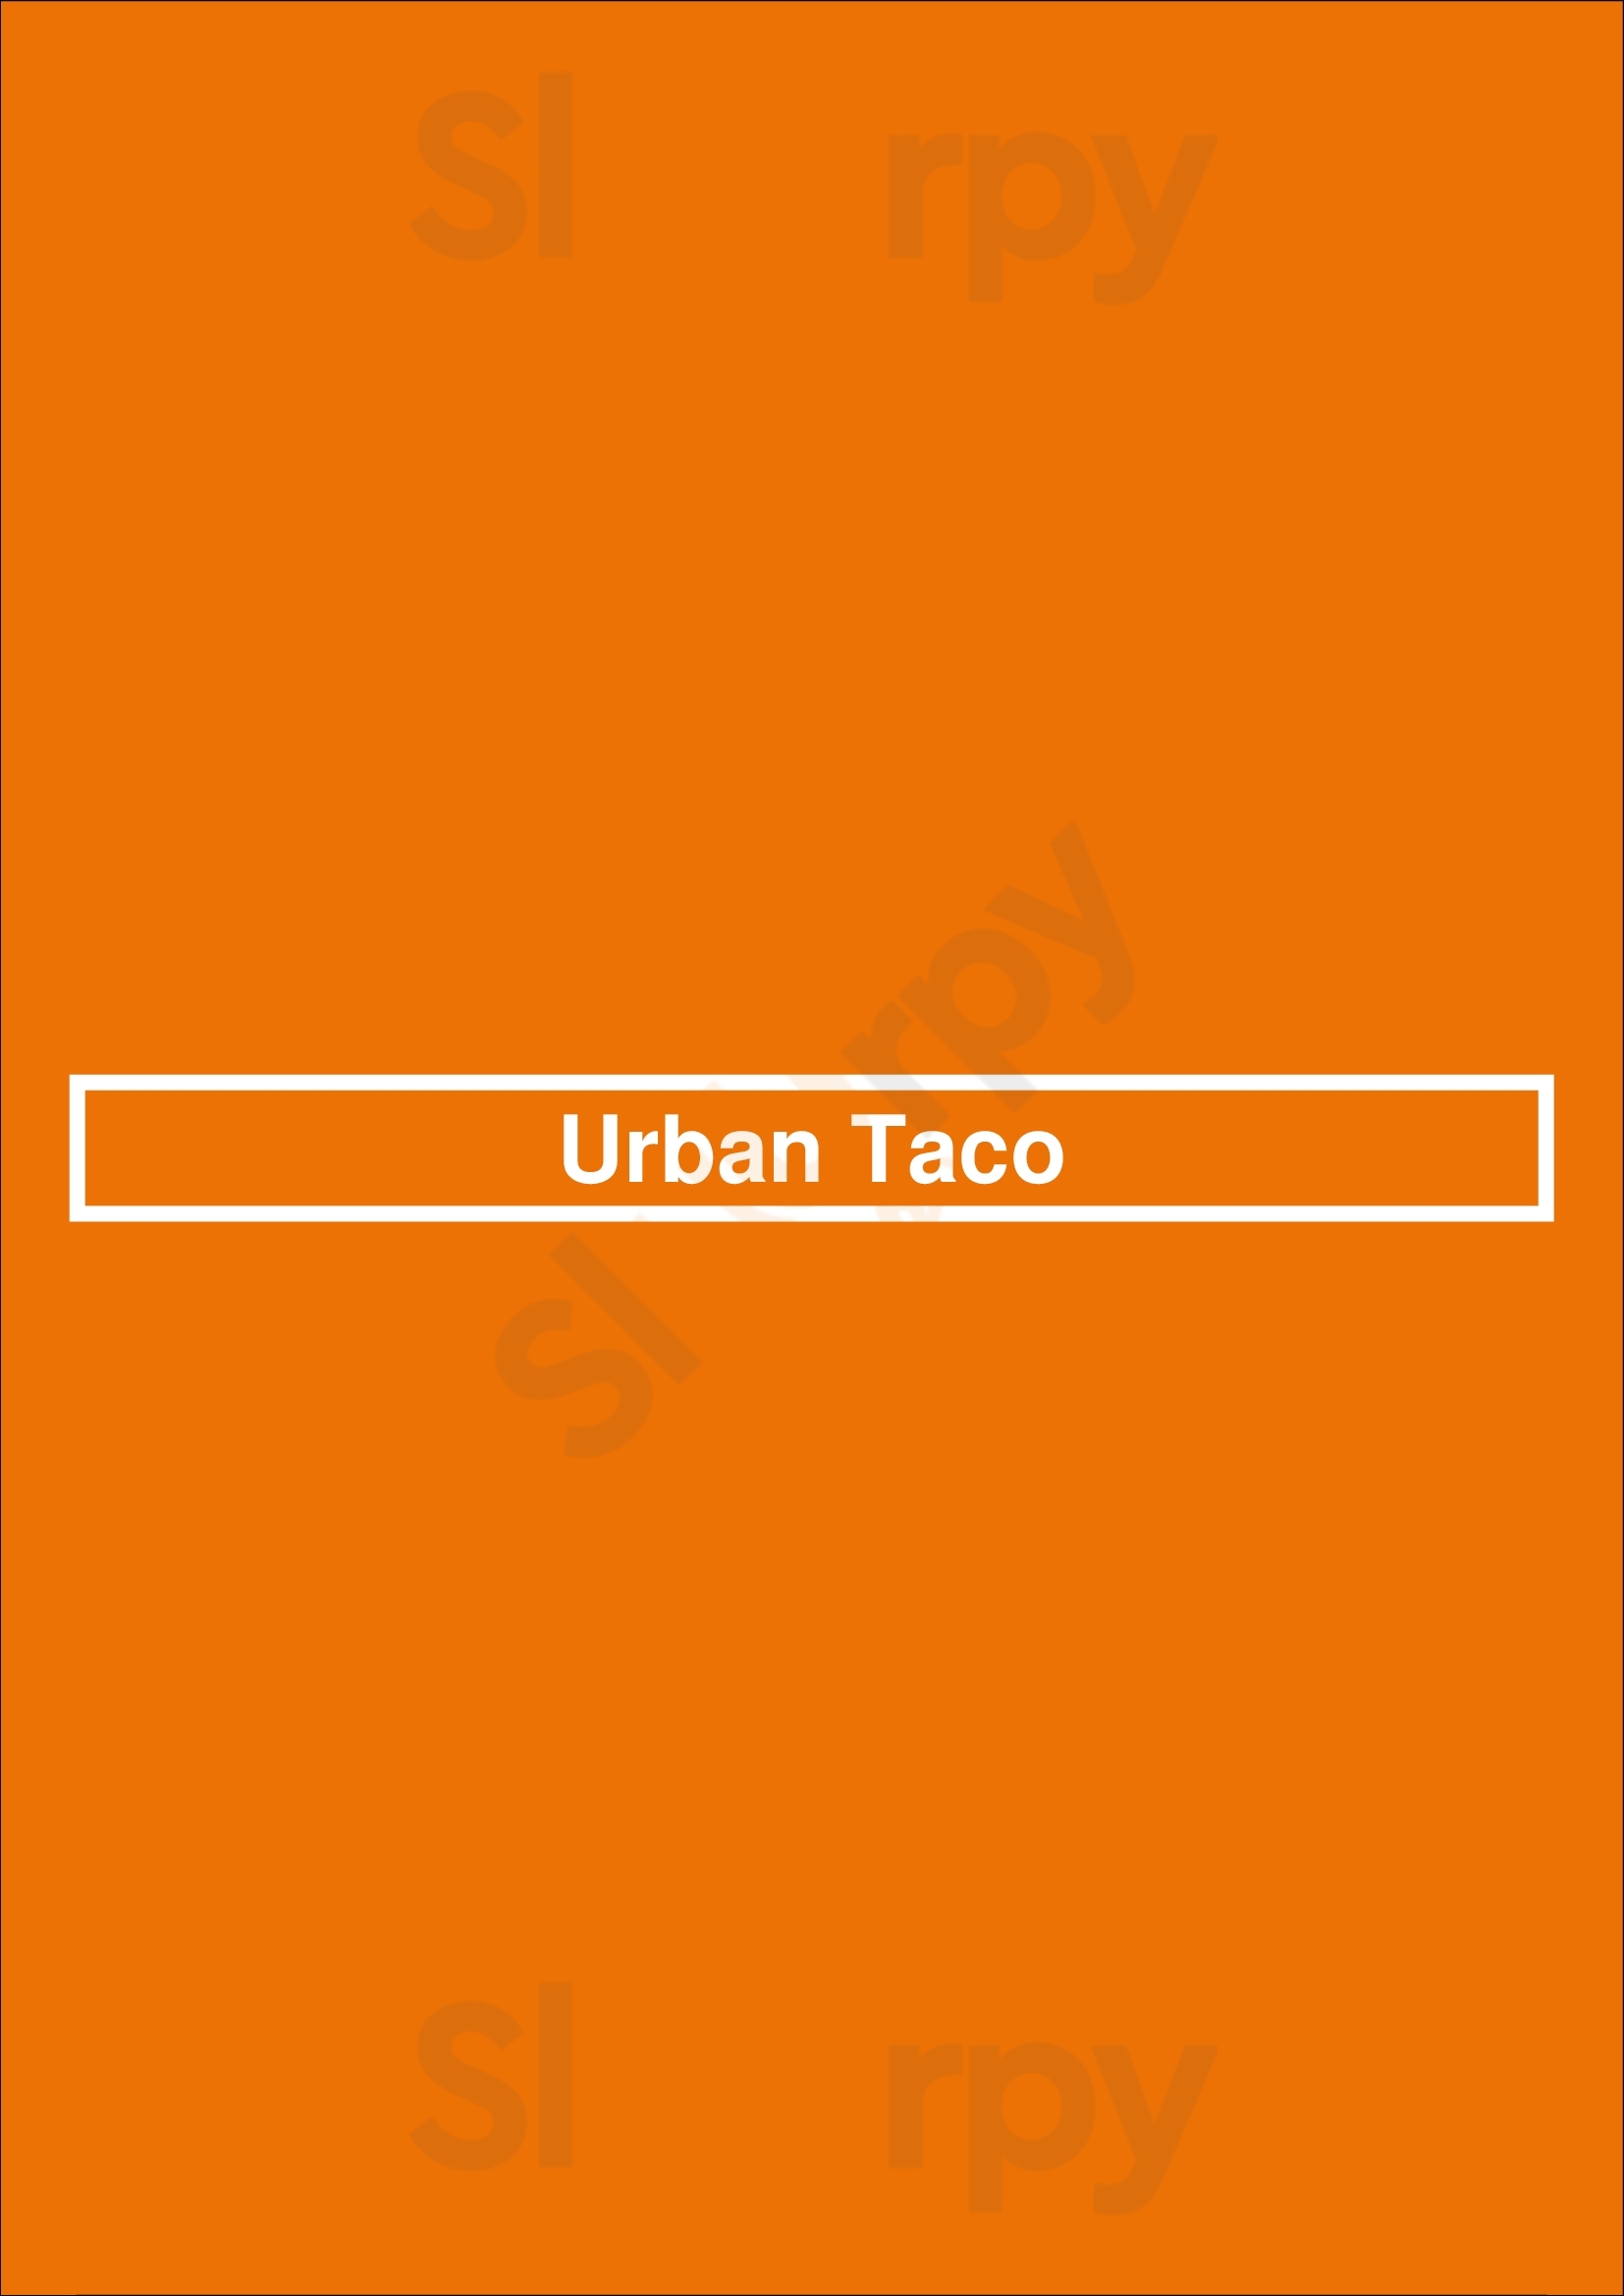 Urban Taco Dallas Menu - 1